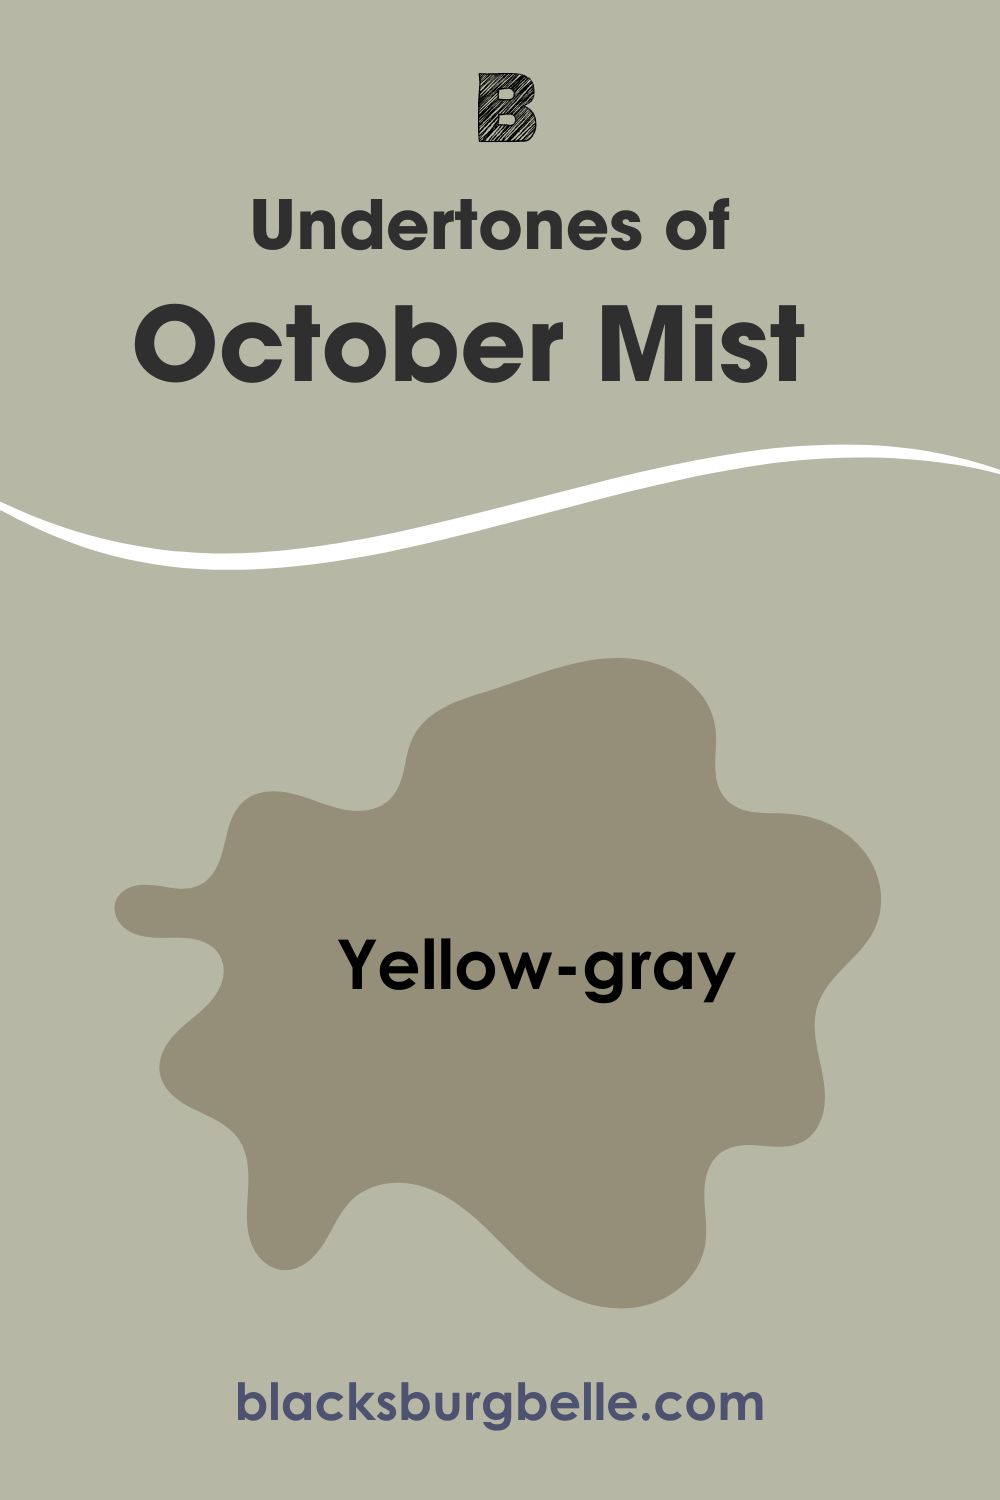 Undertones of October Mist